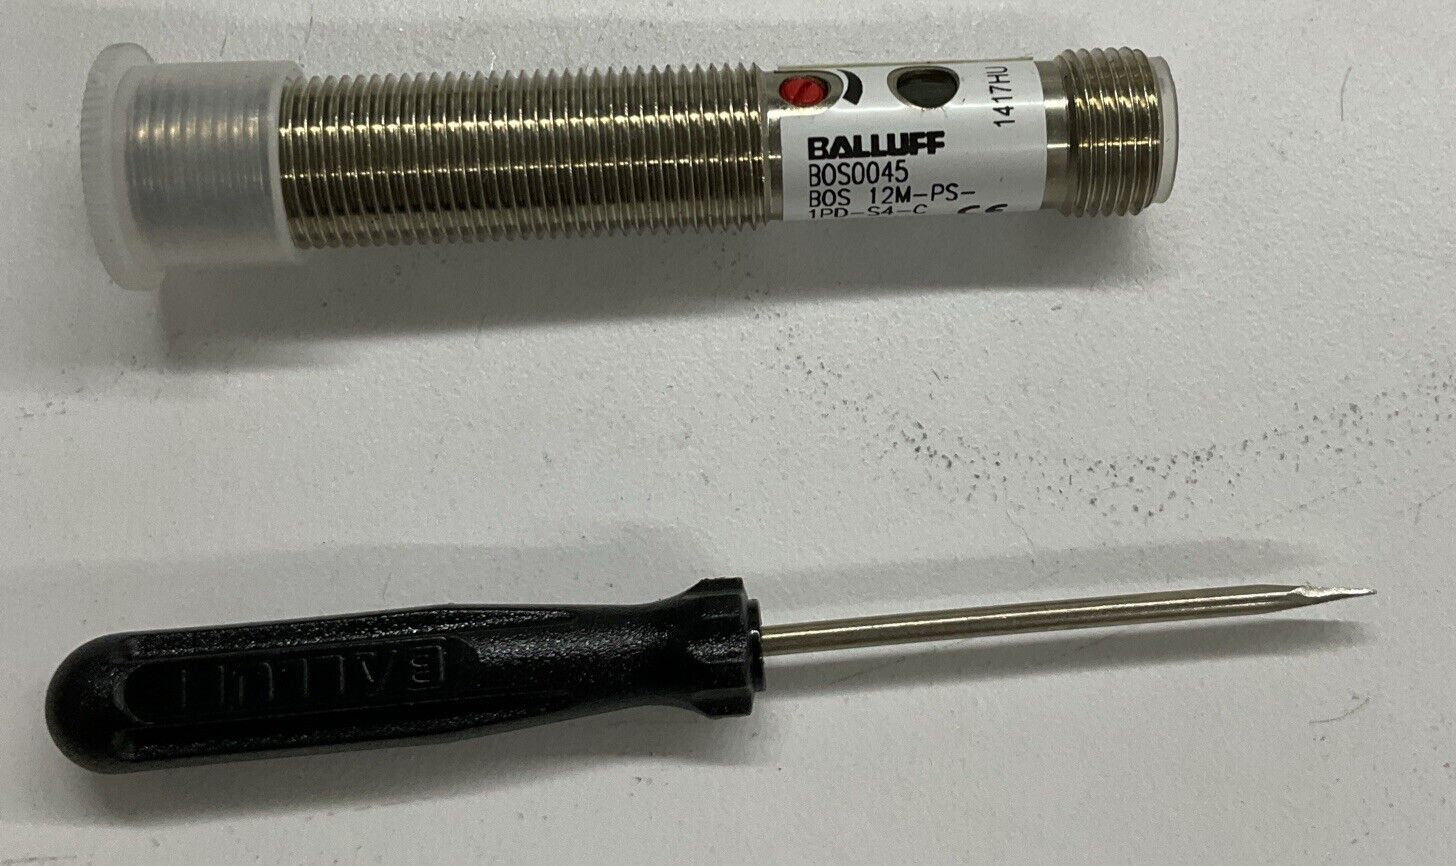 Balluff BOS0045 / BOS 12M-PS-1PD-S4-C Diffuse Sensor, 10-30VDC (BL269)